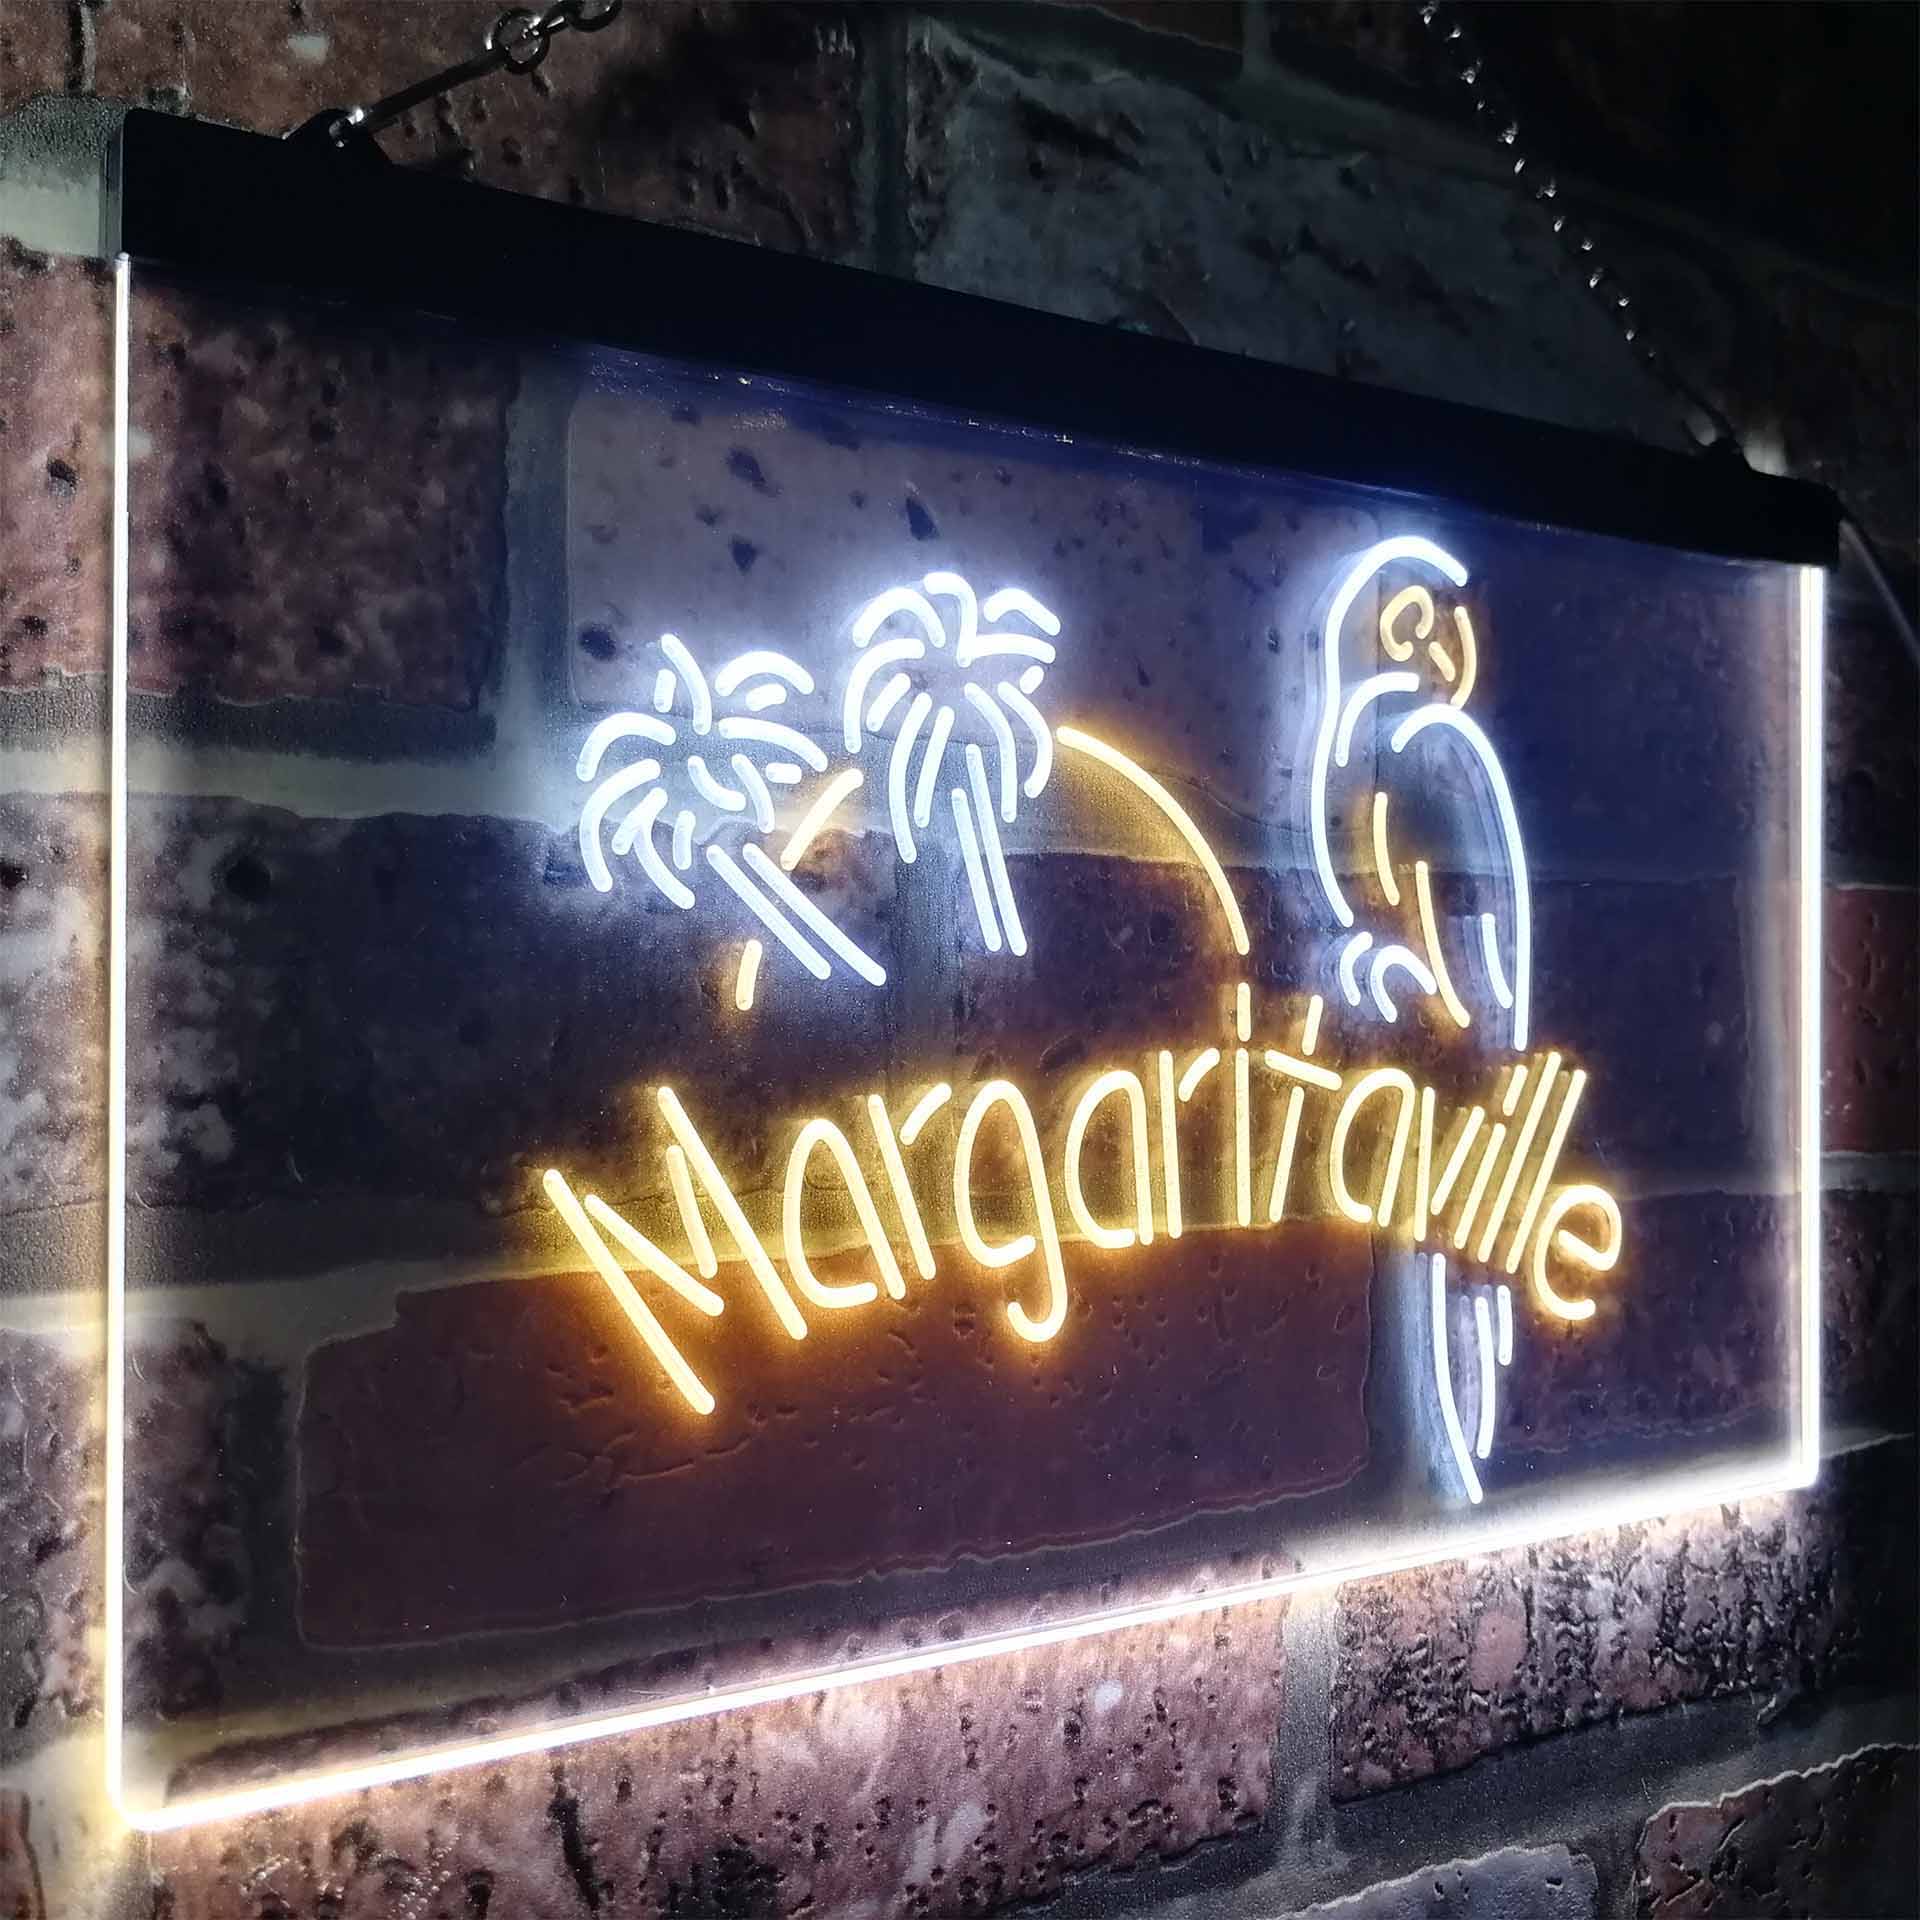 Jimmy Buffett Margaritaville LED Neon Sign